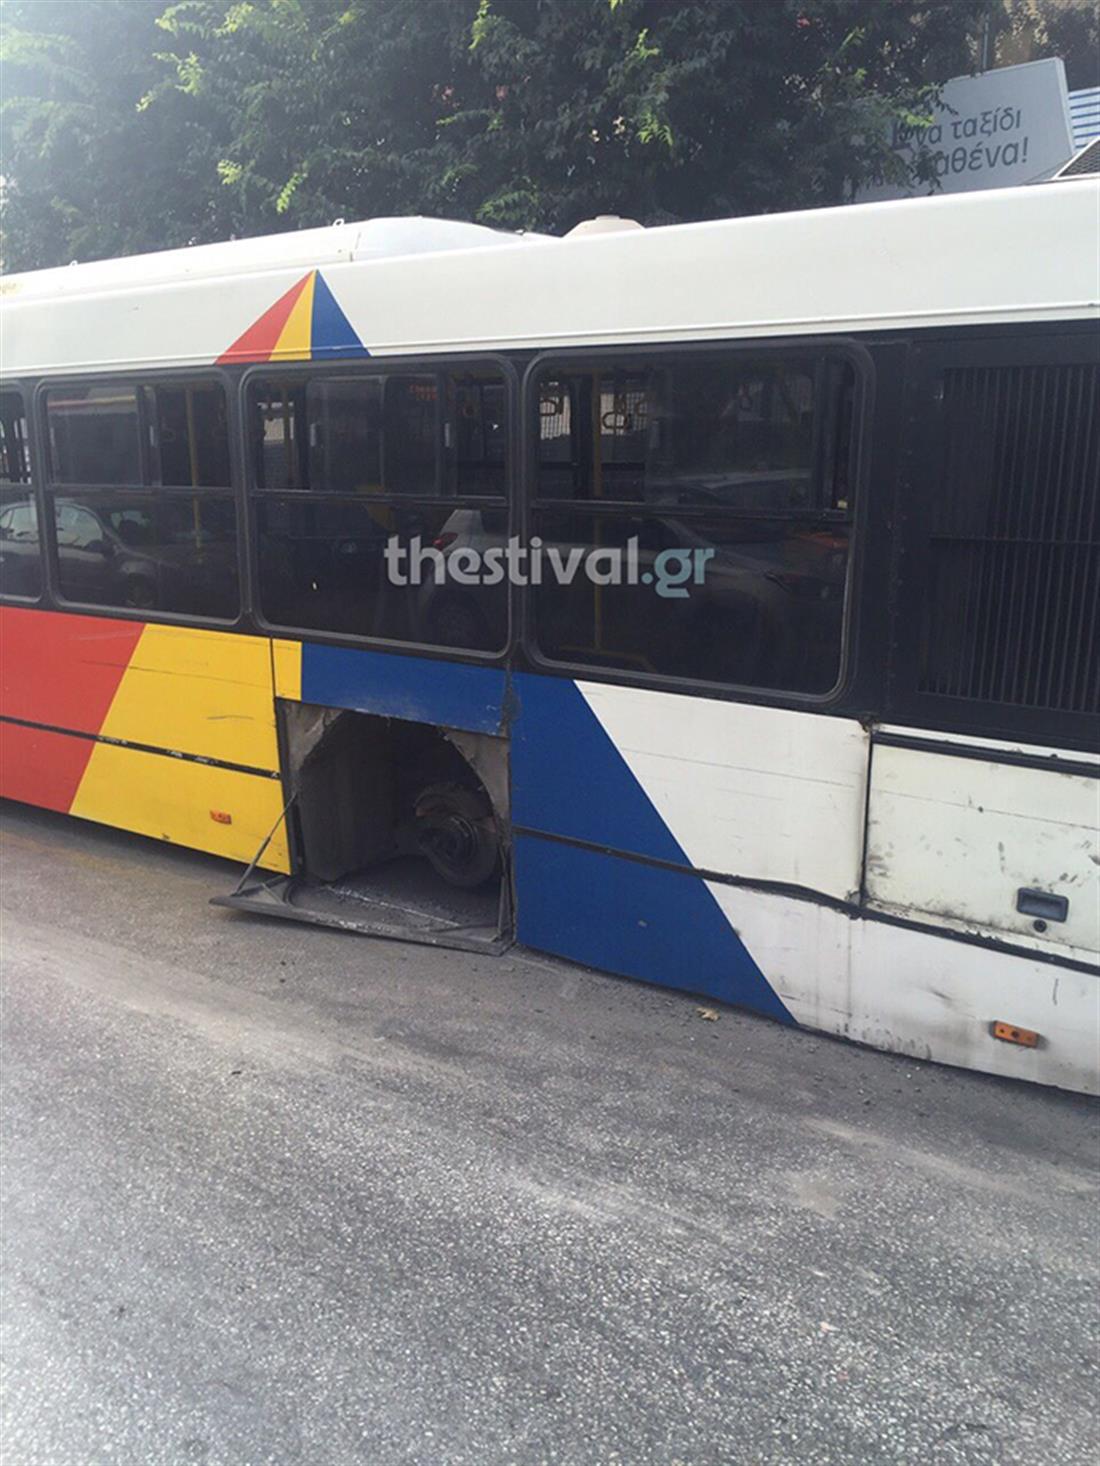 Θεσσαλονίκη - τροχαίο ατύχημα - τροχός - λεωφορείο